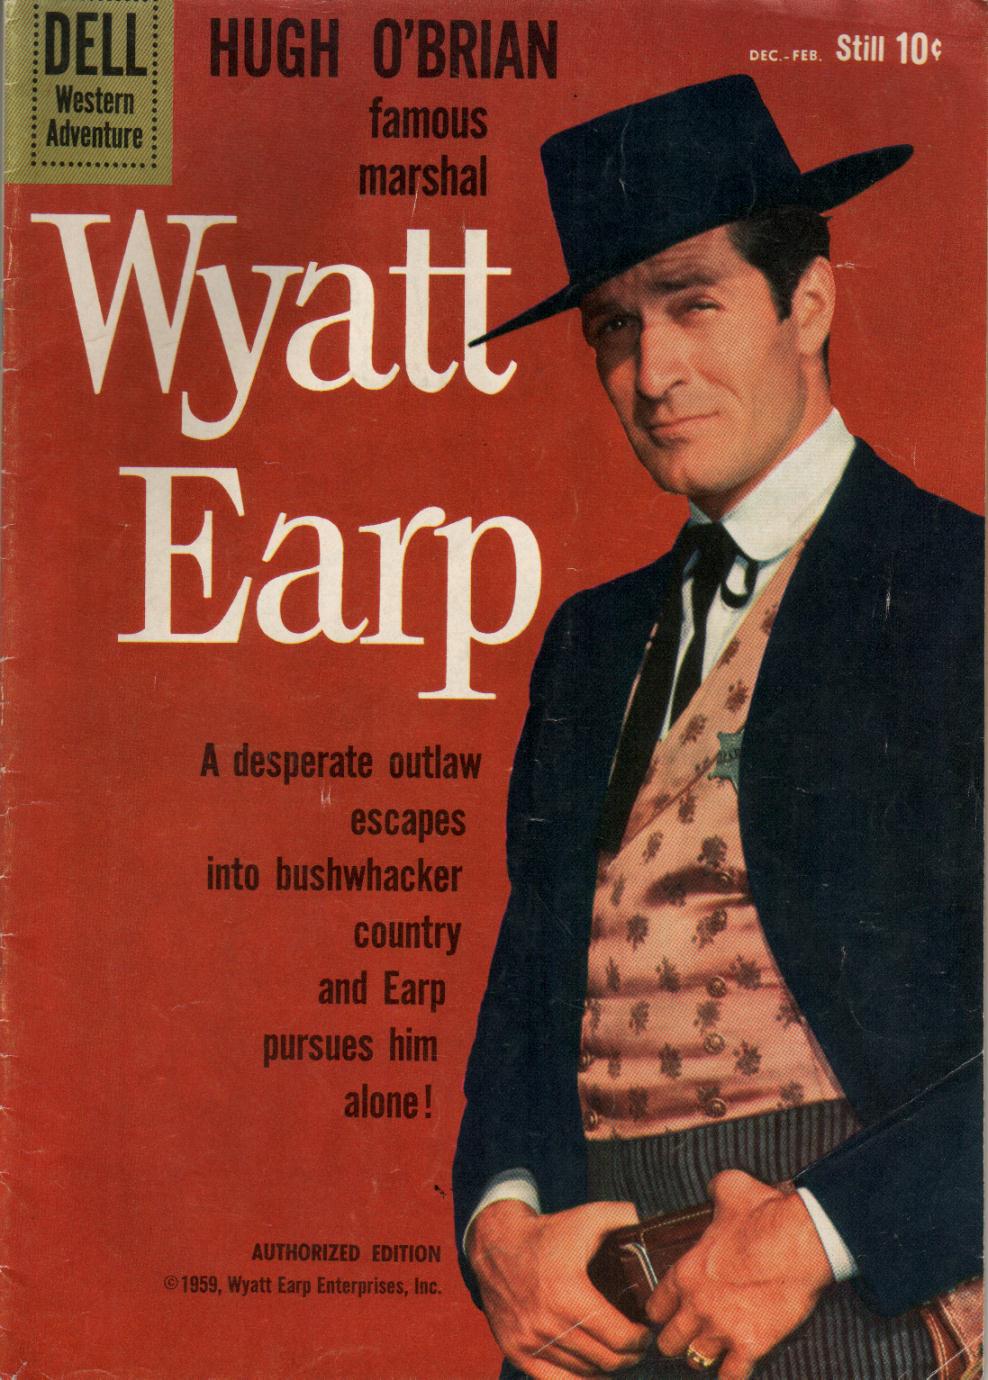 Book Cover For Wyatt Earp 9